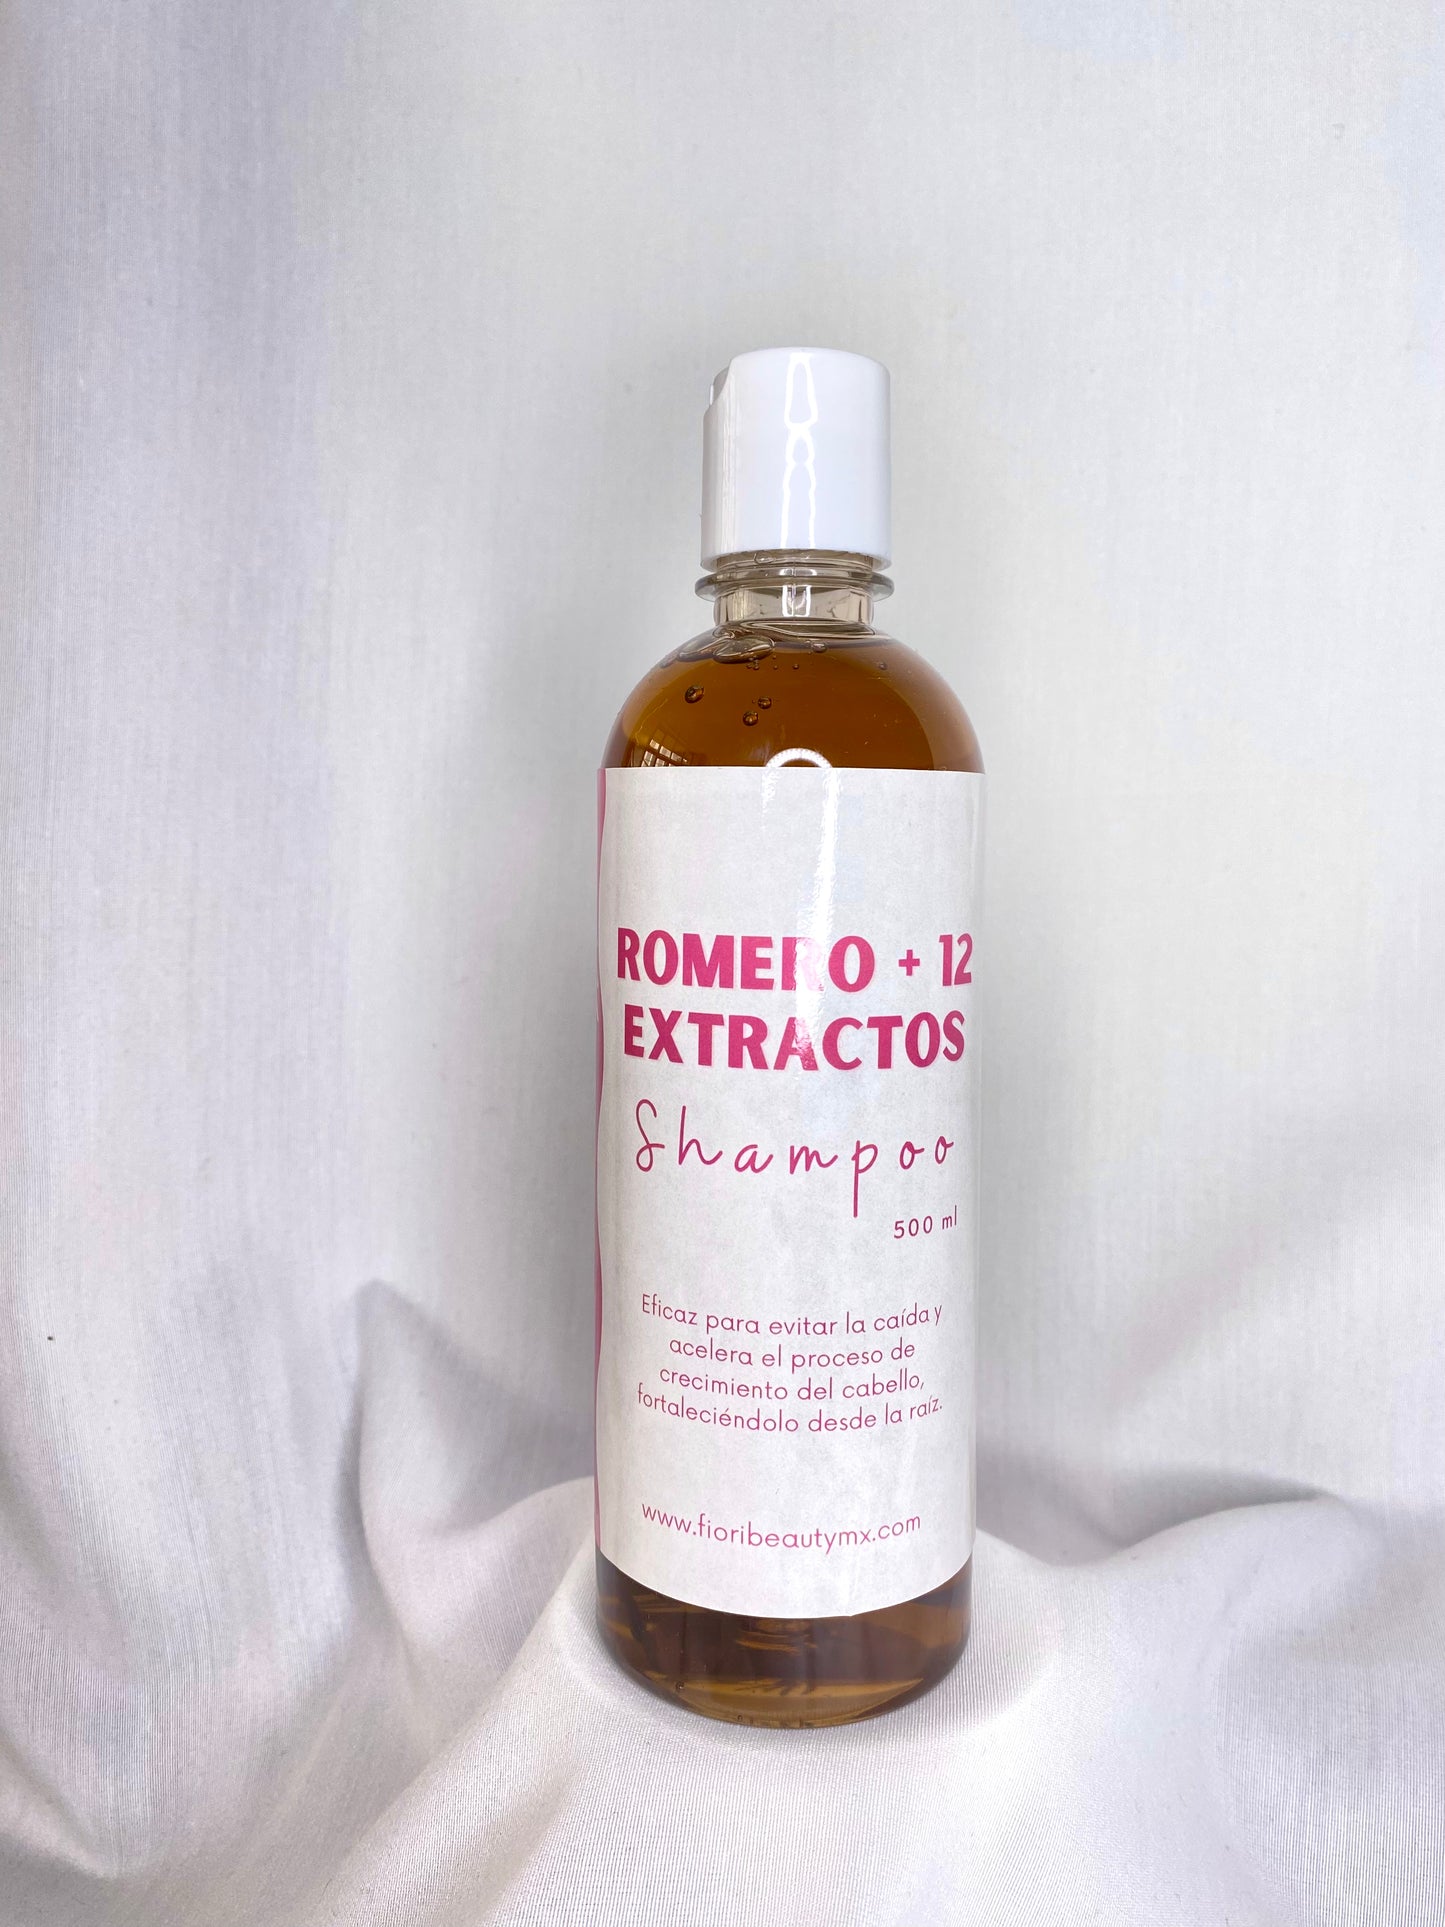 Shampoo Romero + 12 extractos